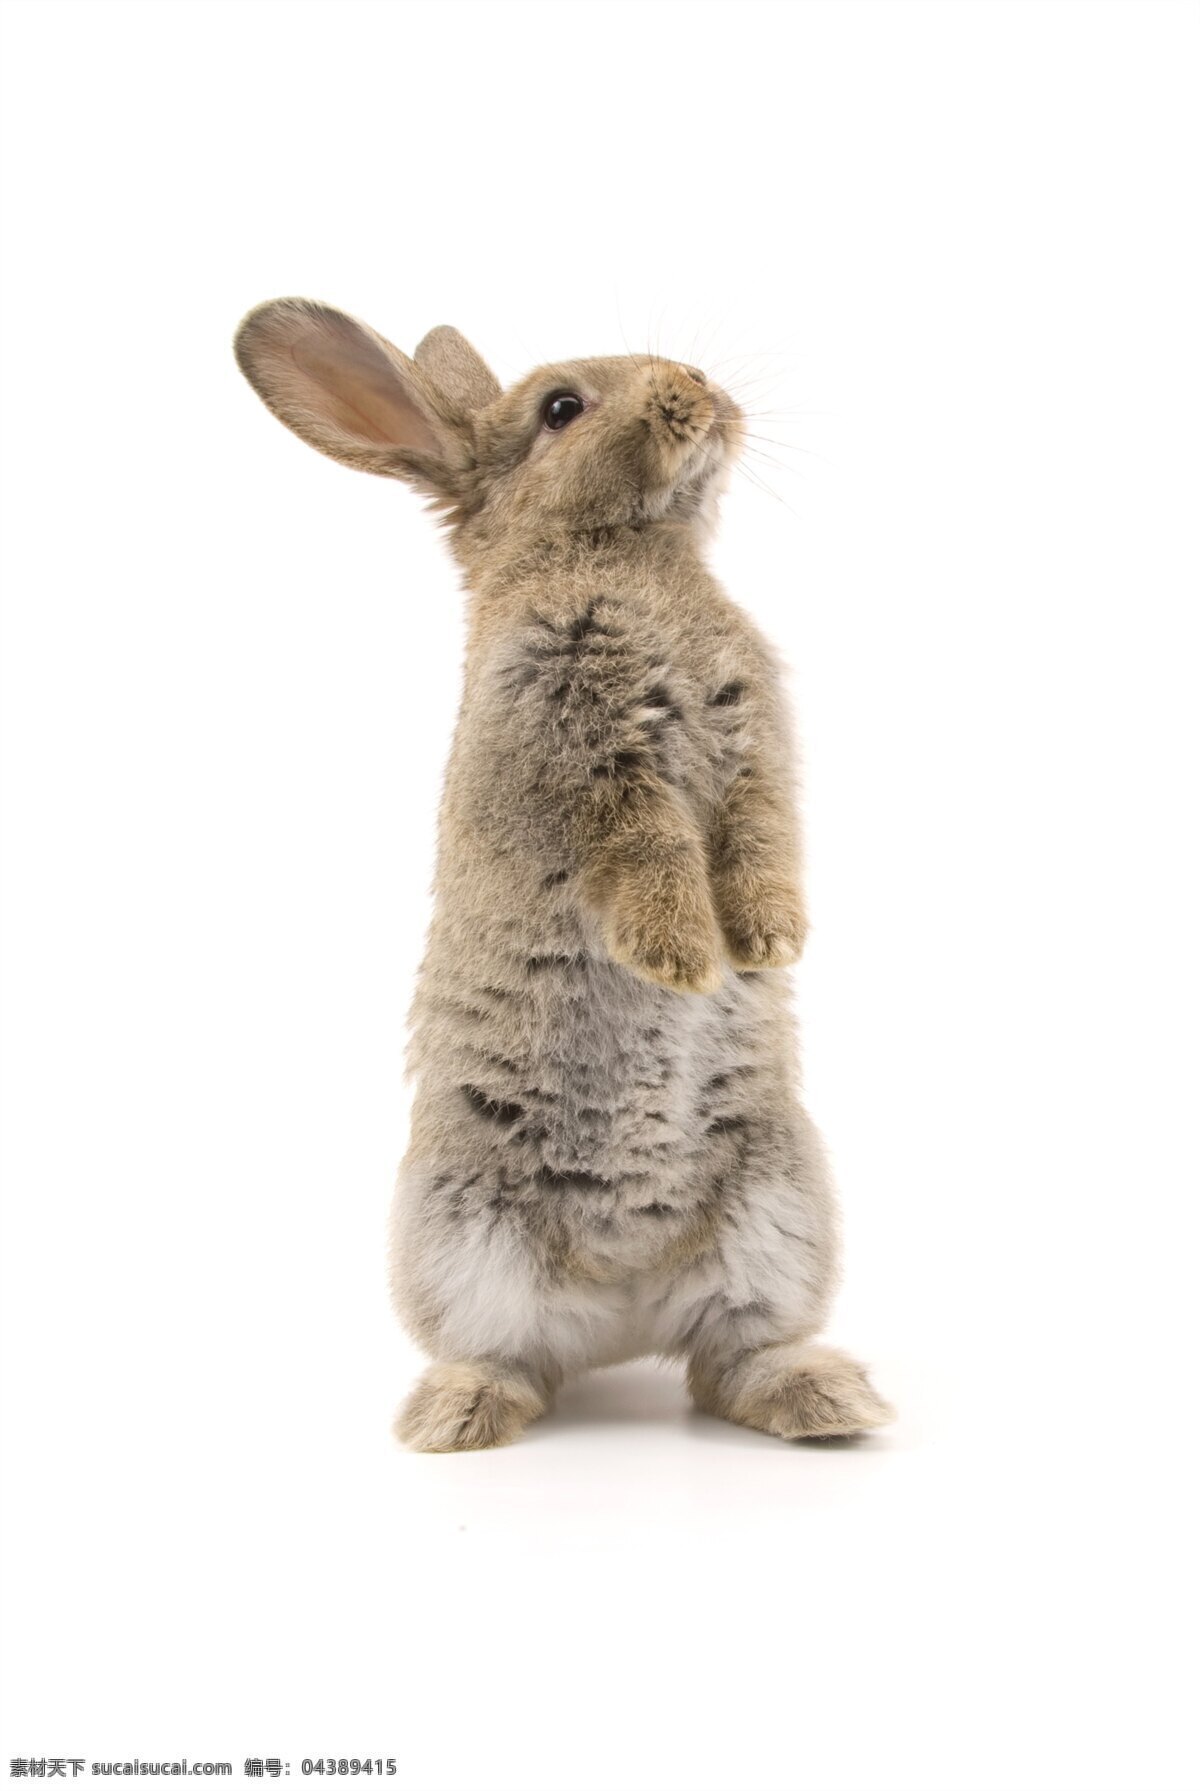 小白兔 白兔 白兔子 小兔子 大白兔 可爱的兔子 红眼睛兔子 兔子特写 可爱的小兔子 宠物兔子 草地兔子 麦田兔子 萌宠